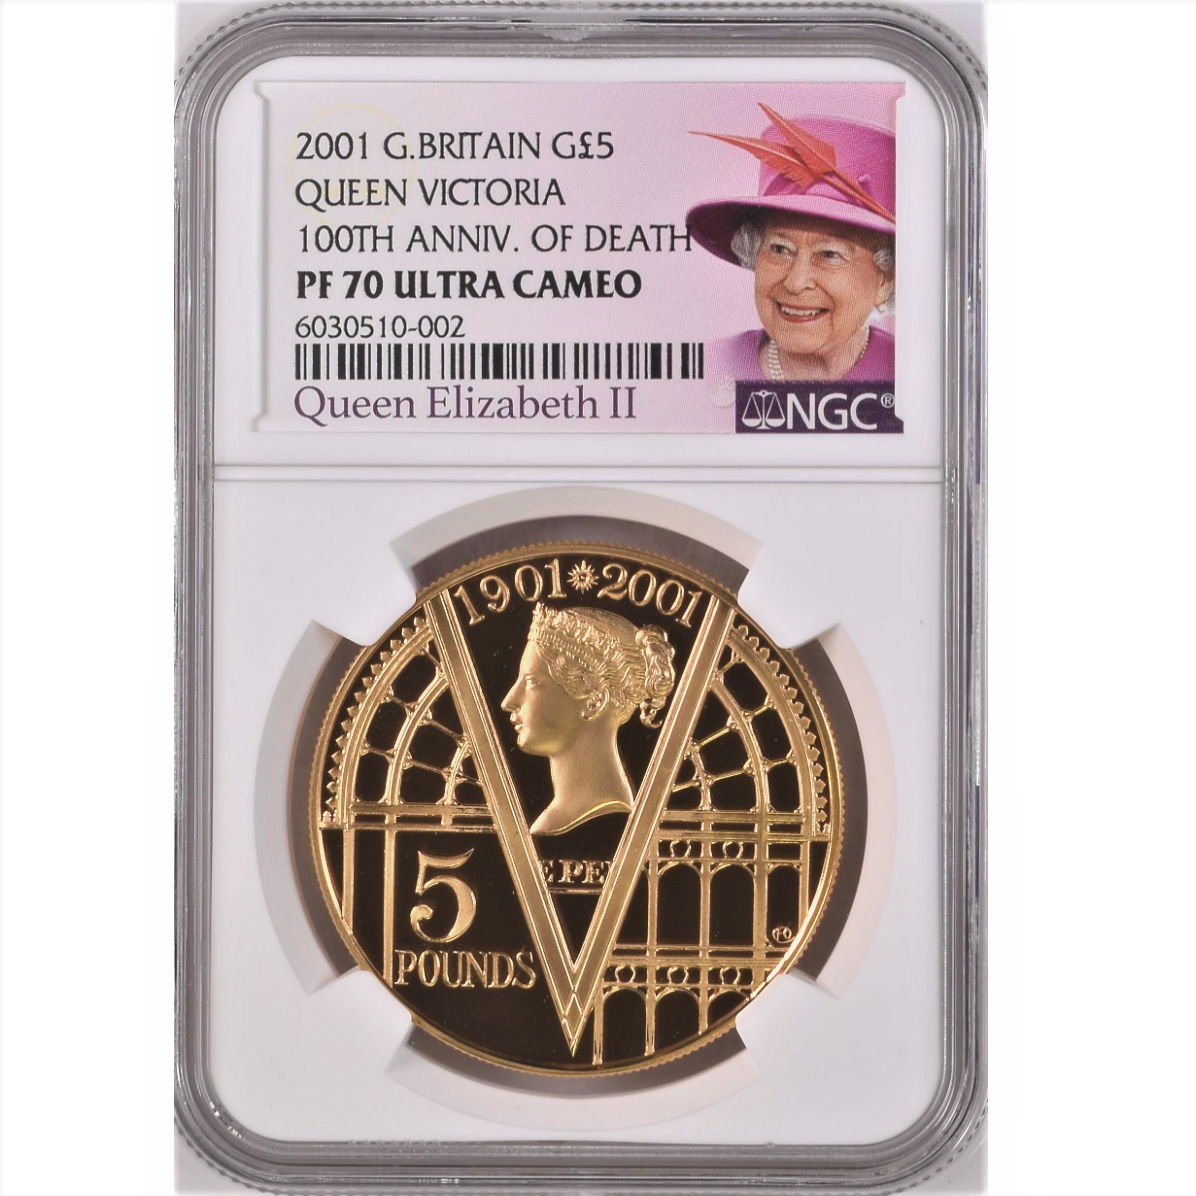 2001 イギリス 5ポンド 金貨 ヴィクトリア女王 没後100周年追悼記念 